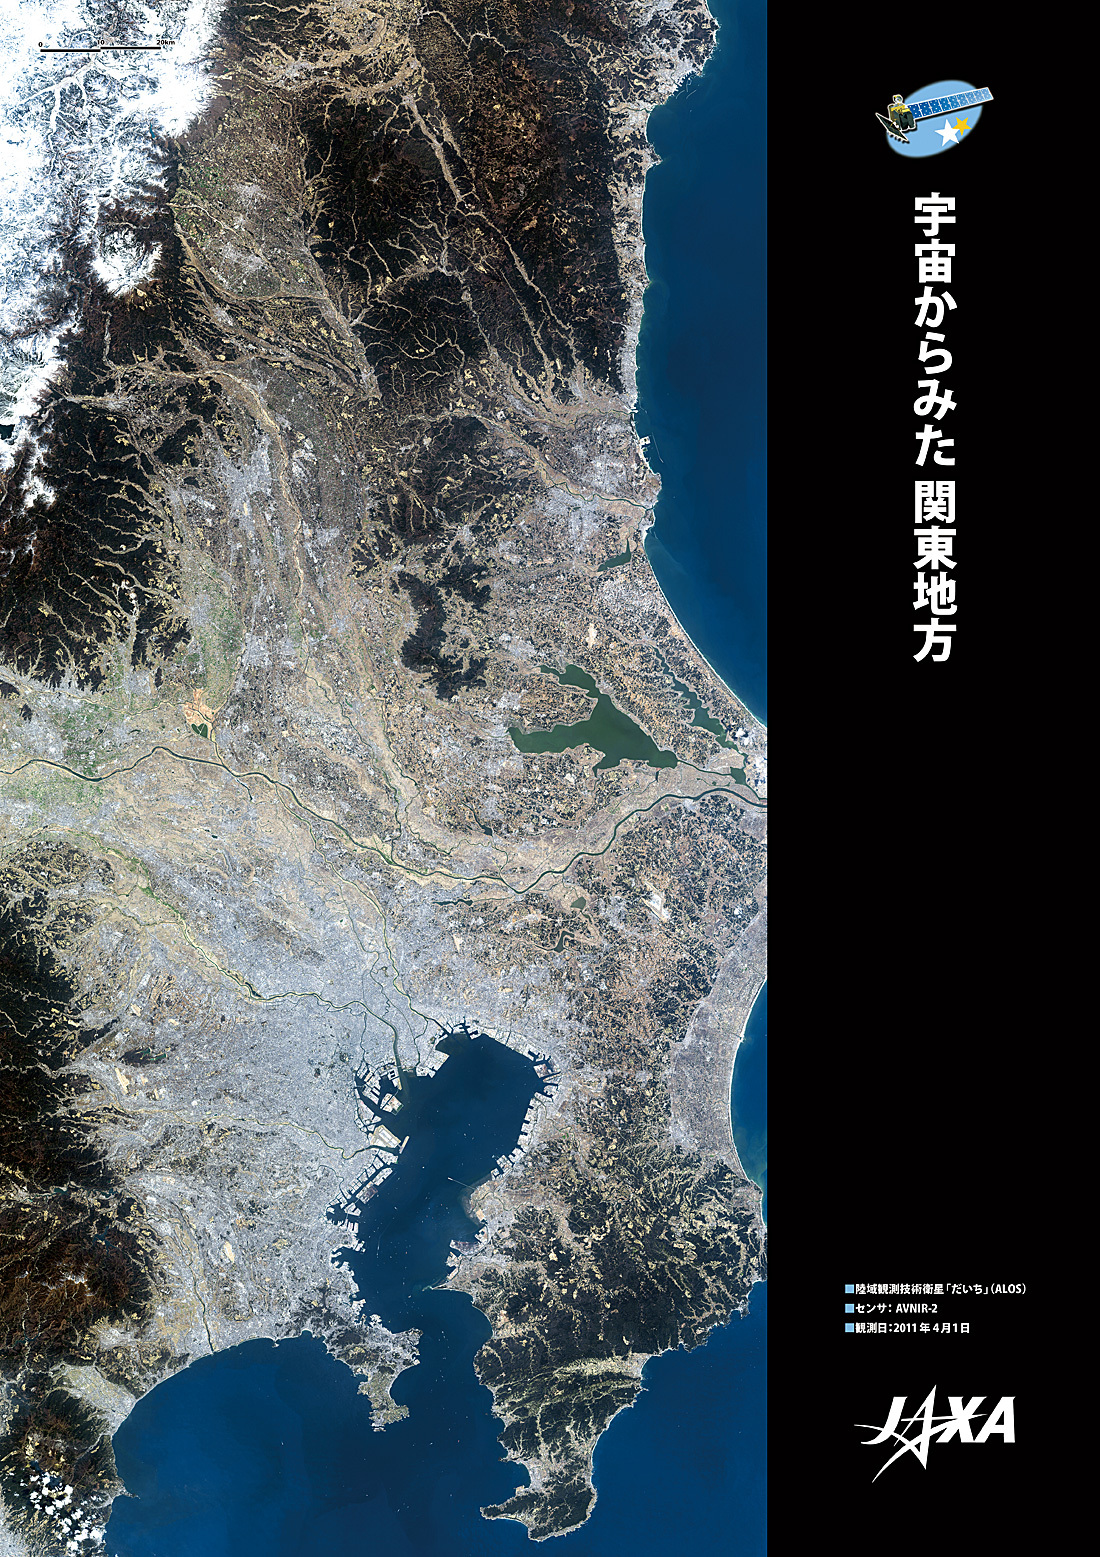 だいちから見た日本の都市 関東:衛星画像（ポスター仕上げ）